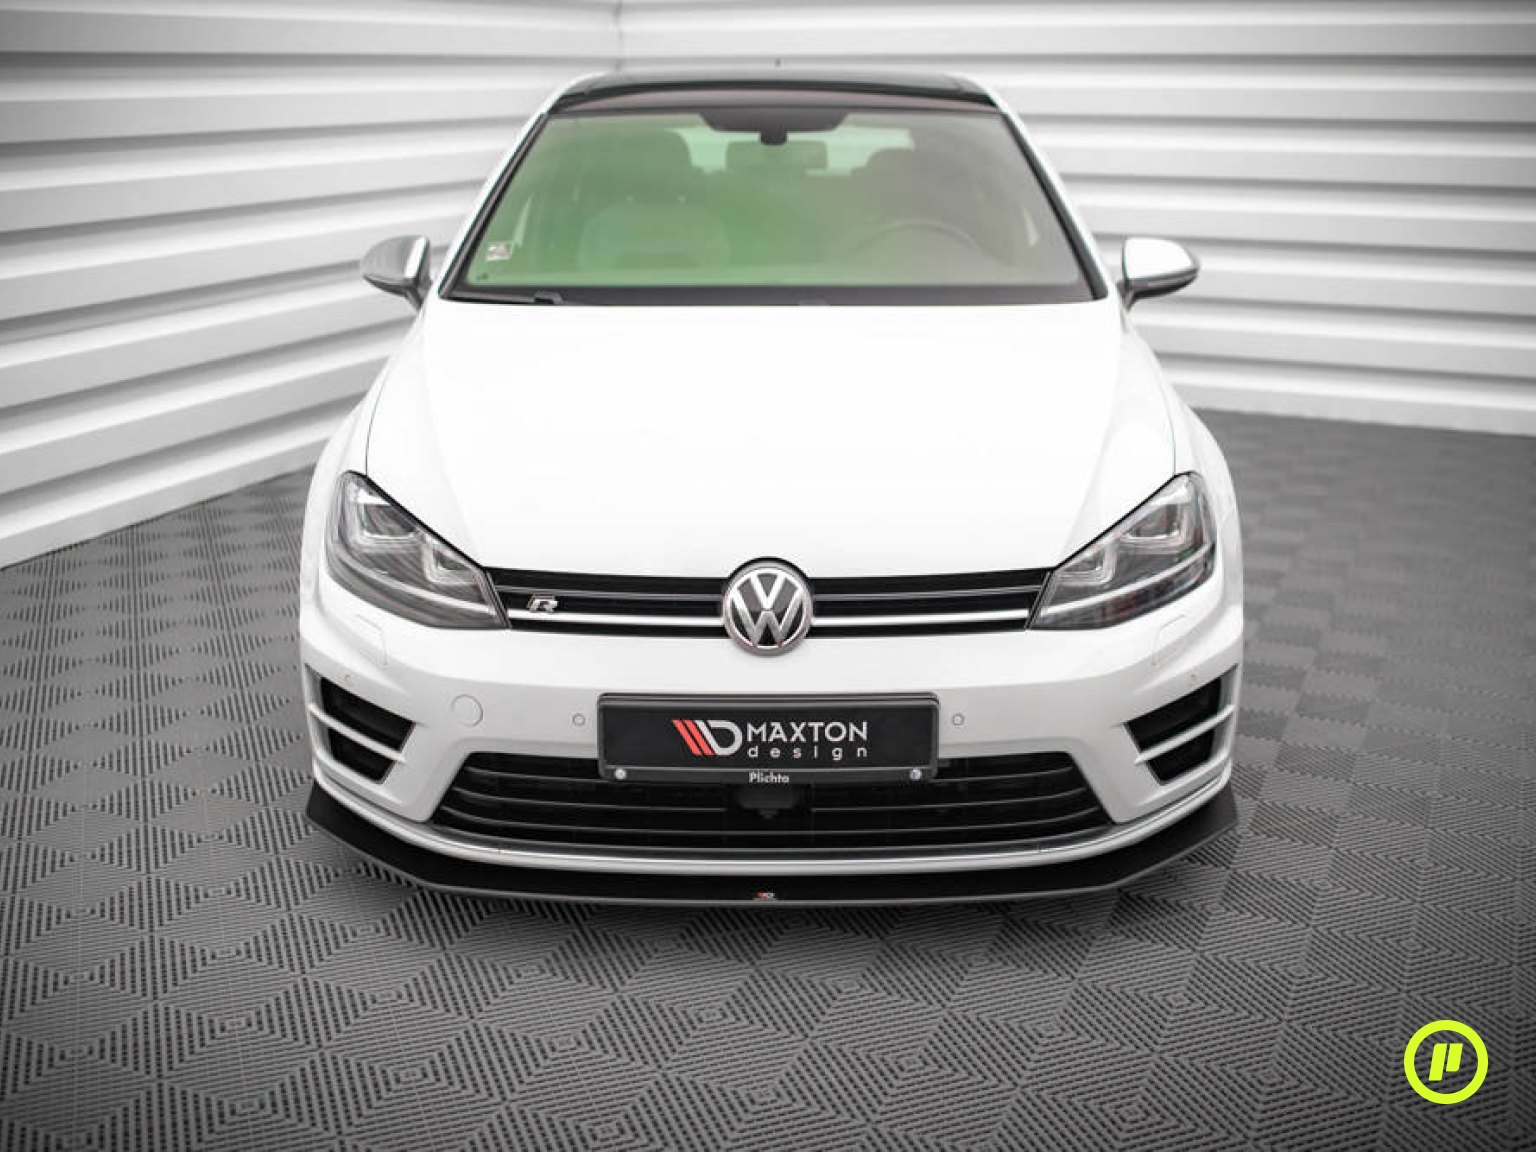 Maxton Design - Street Pro Frontsplitter v2 für Volkswagen Golf 7 R (Mk7 2013-2016)